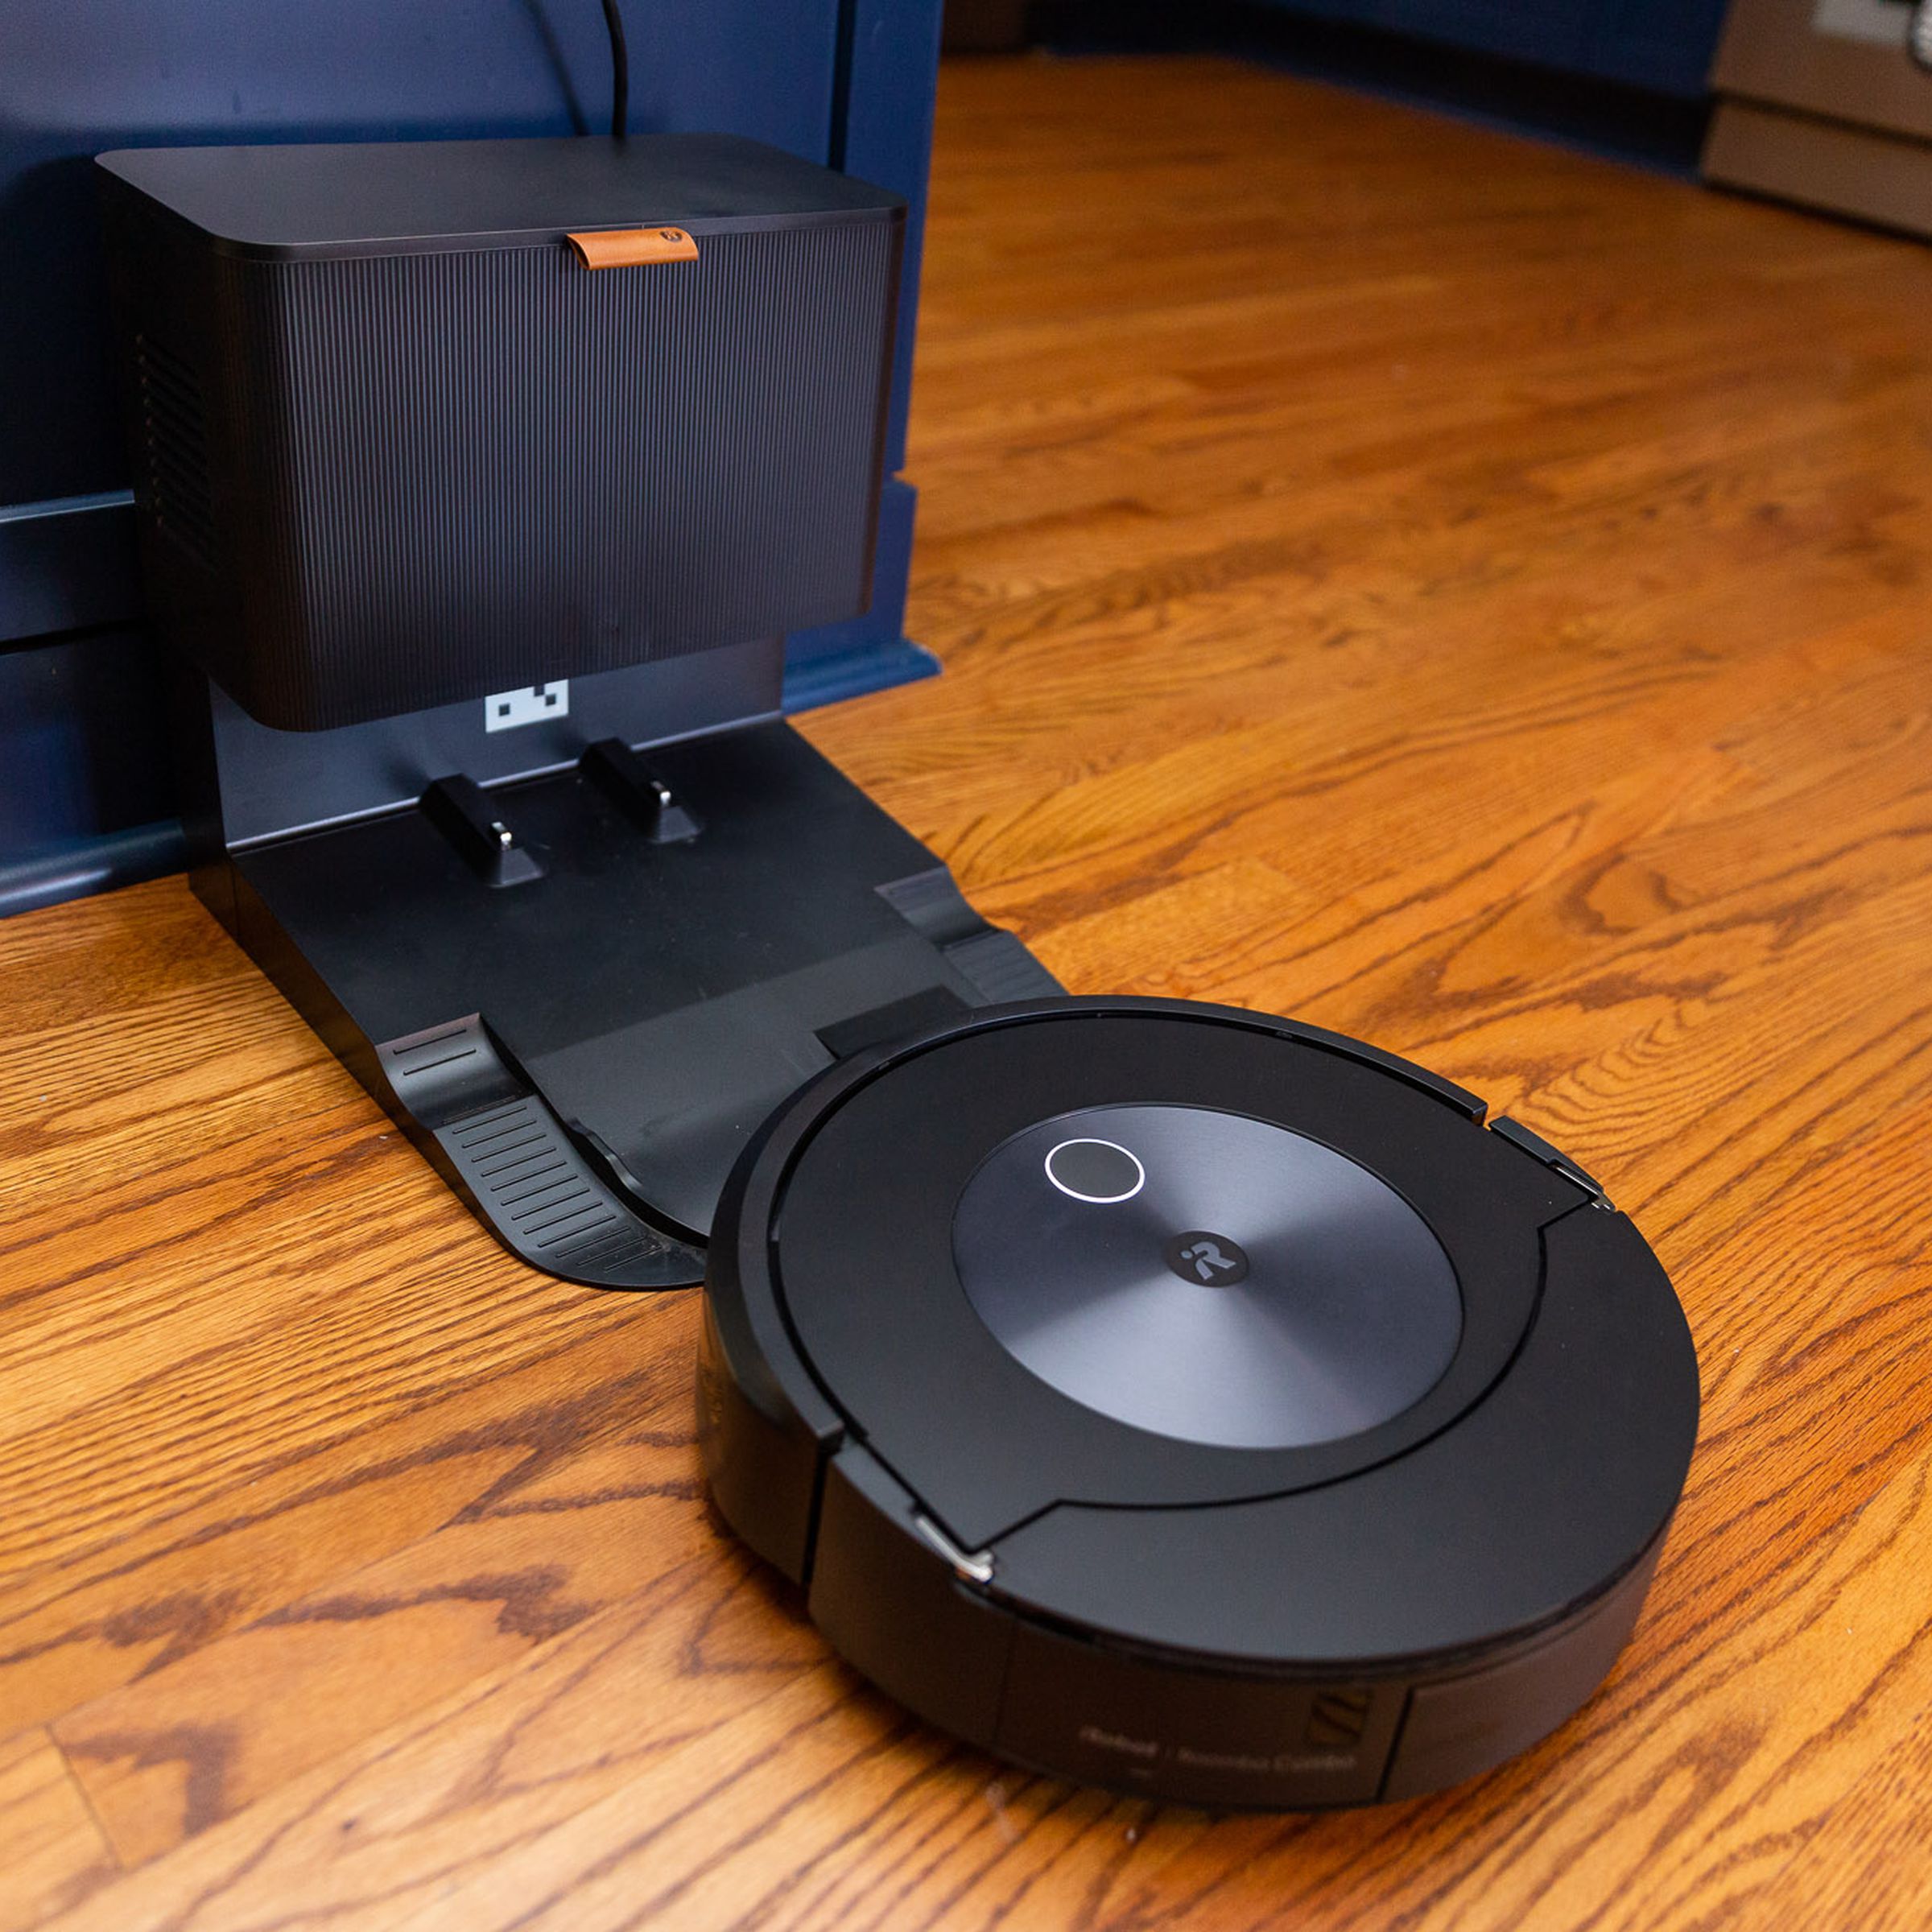 Foto di Roomba Combo J7 che si avvicina automaticamente alla base vuota.  La base ha le dimensioni di un piccolo bidone della spazzatura da cucina.